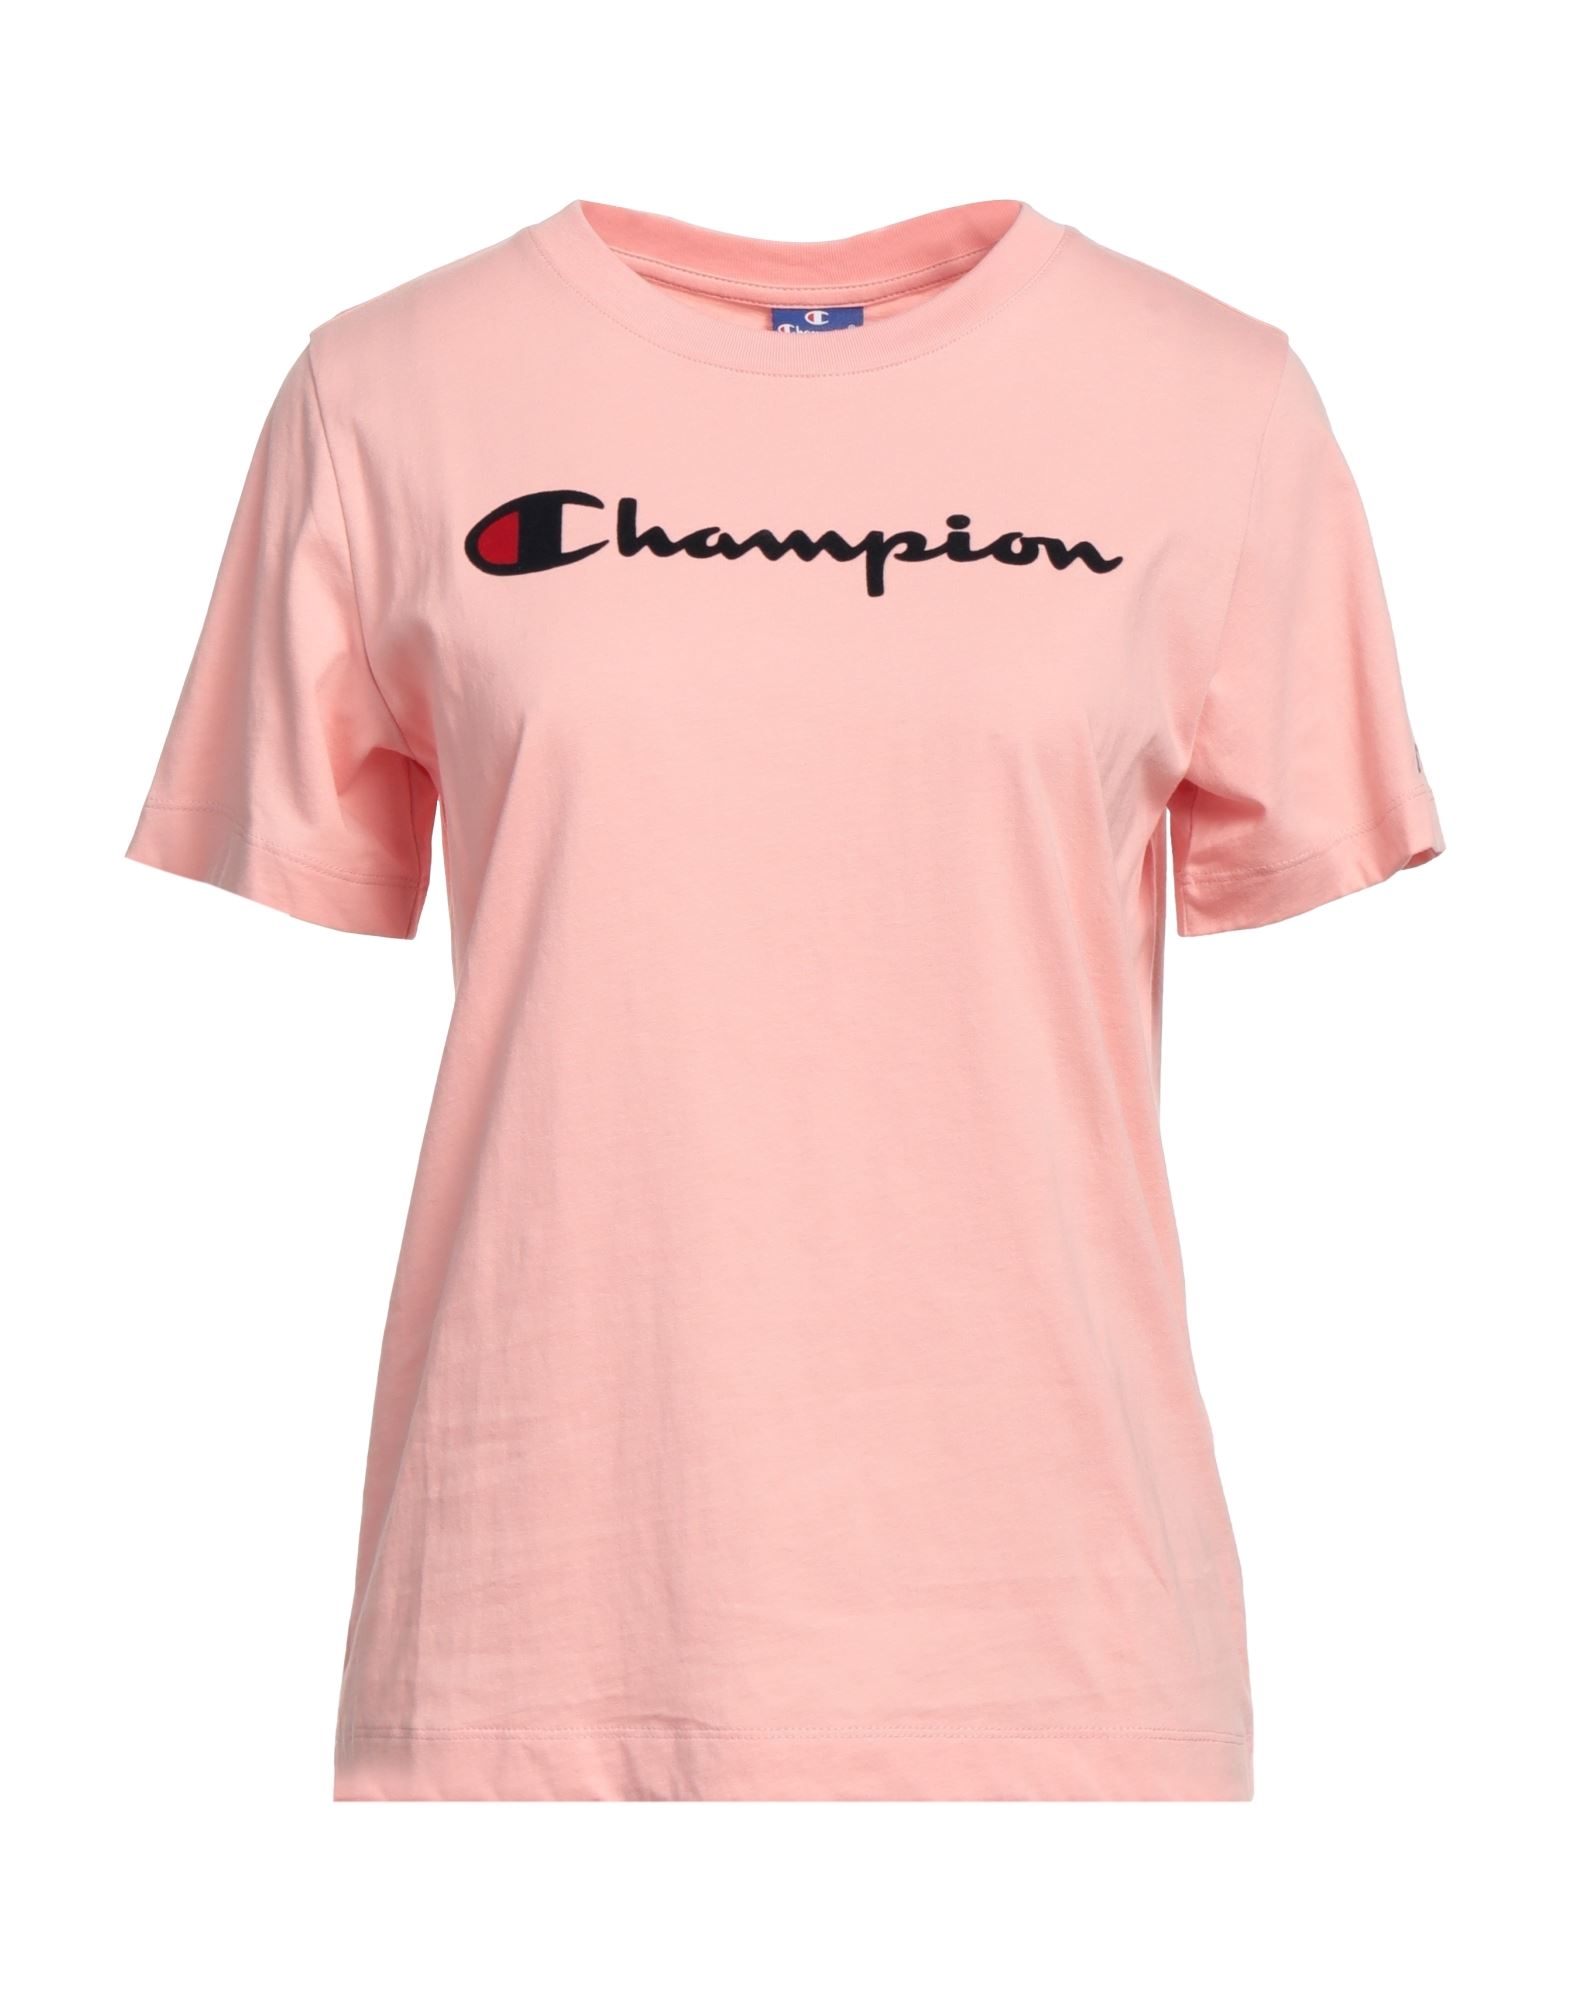 CHAMPION CHAMPION T-SHIRTS